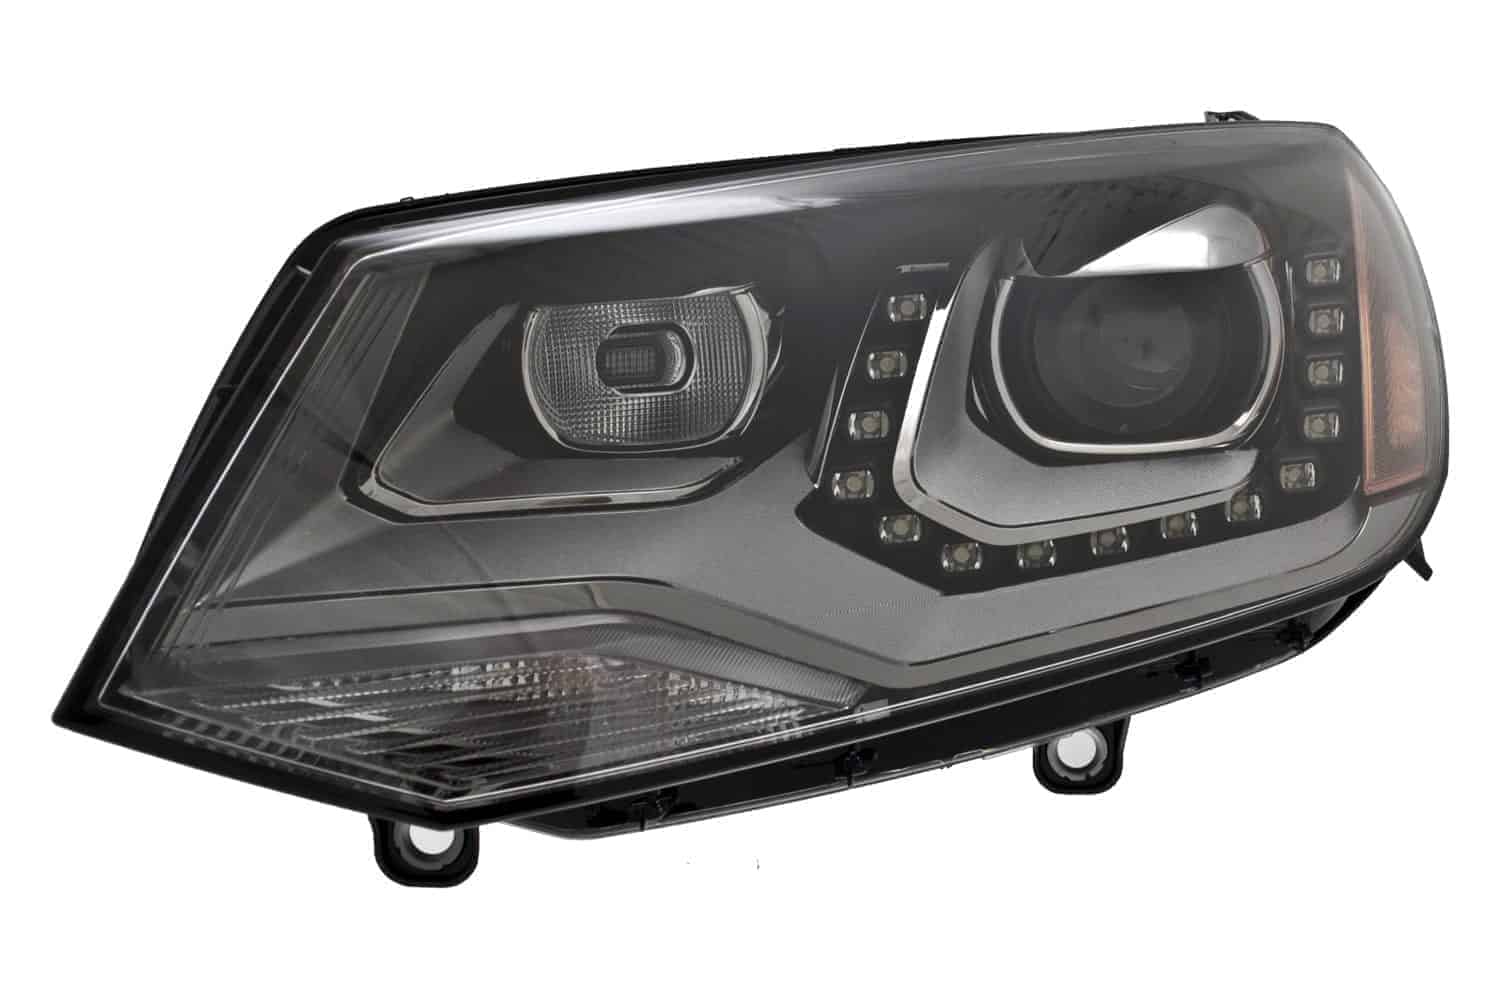 VW2518113 Front Light Headlight Lens & Housing Driver Side